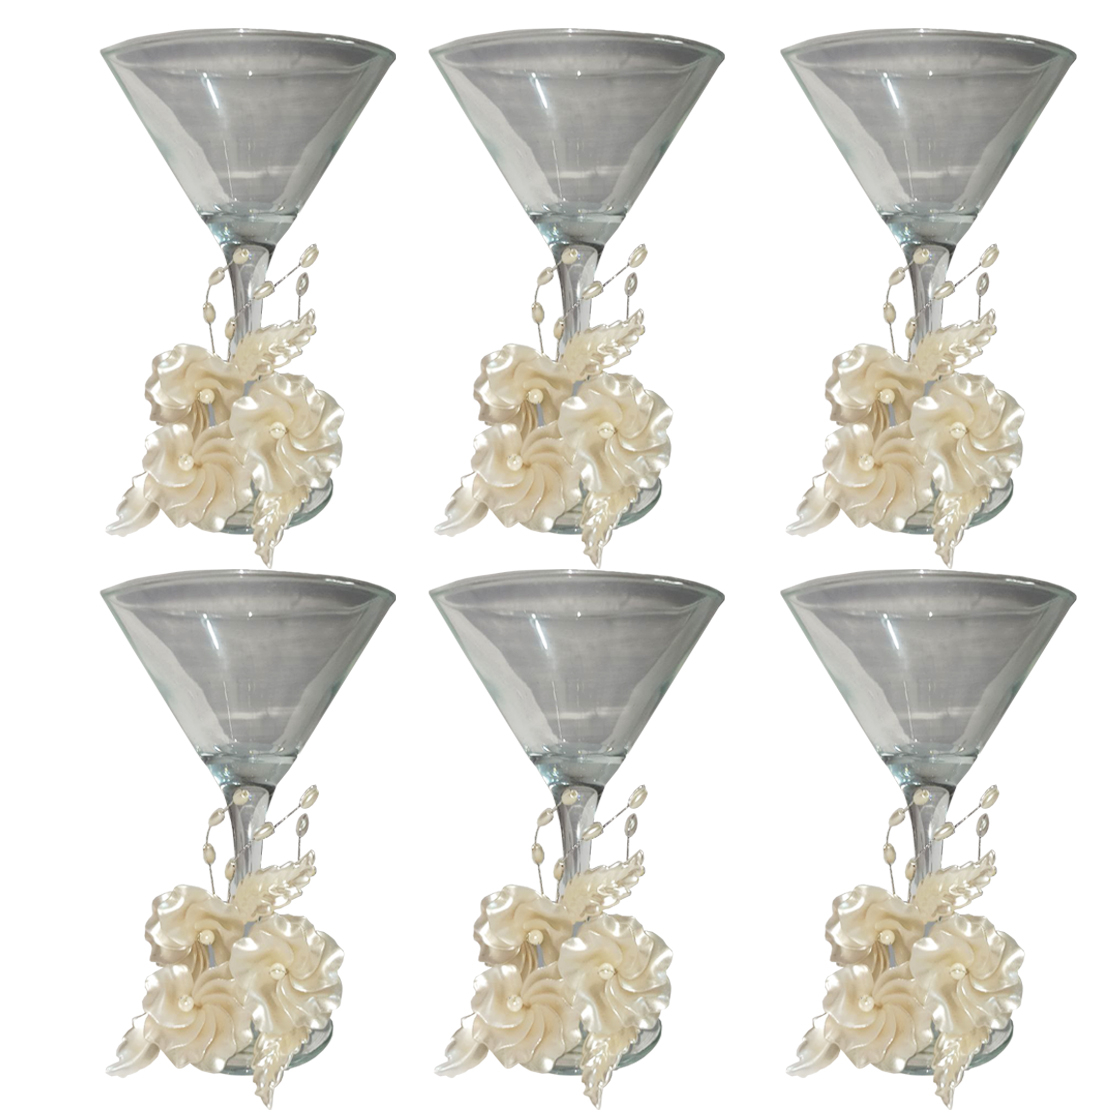 مجموعه ظروف هفت سین 6 پارچه مدل گیلاس طرح گل چیپسی کد 01